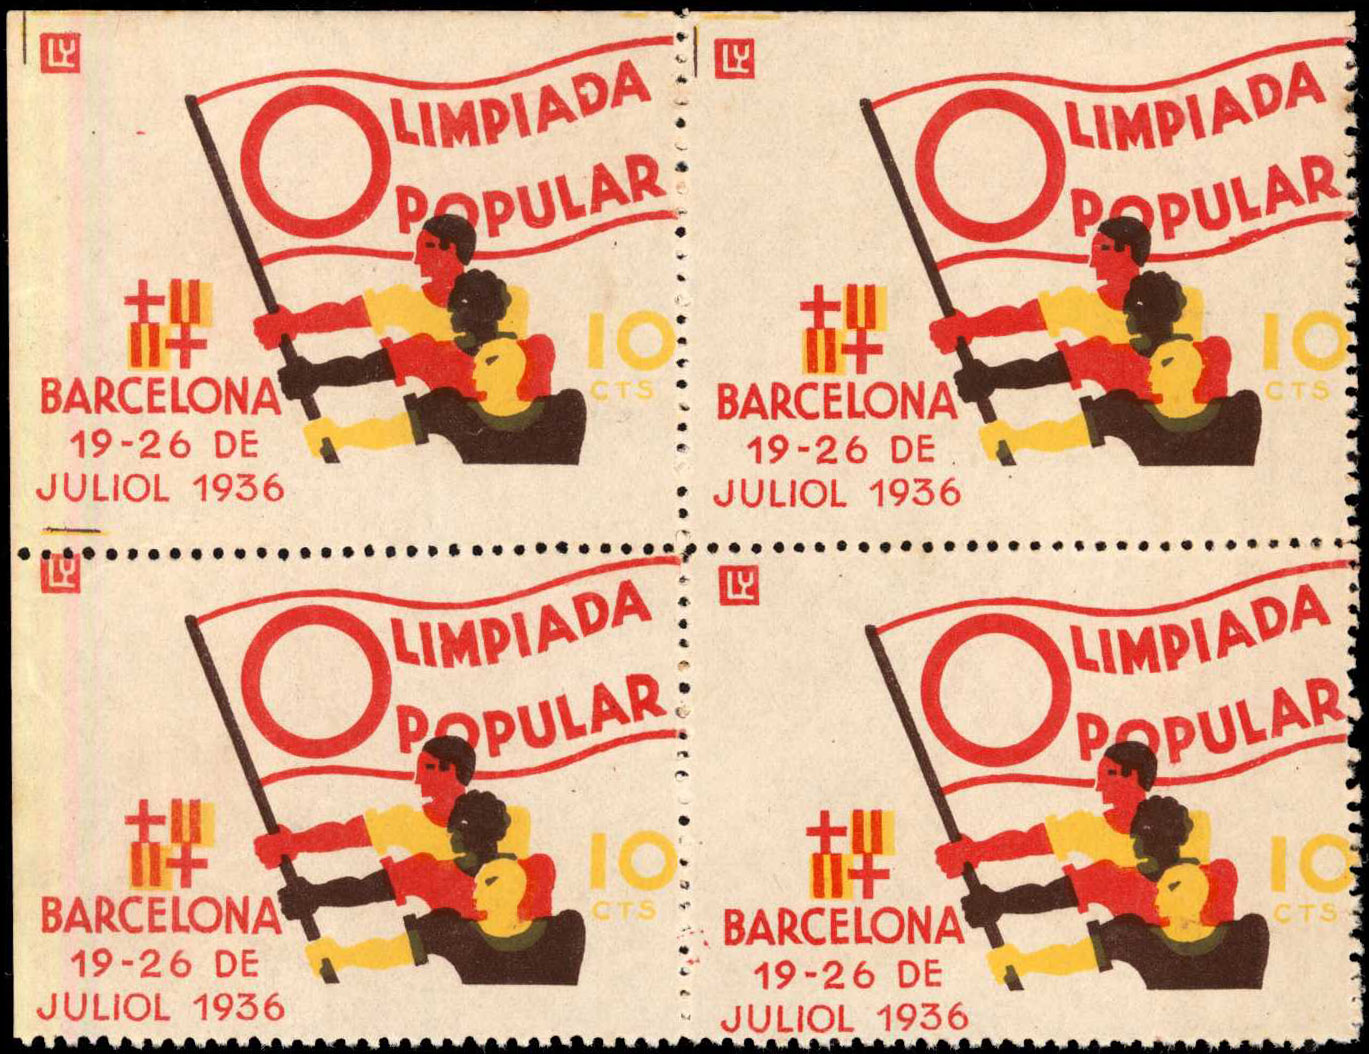 Zehn-Centavos-Briefmarke herausgegeben zur Olimpiada Popular